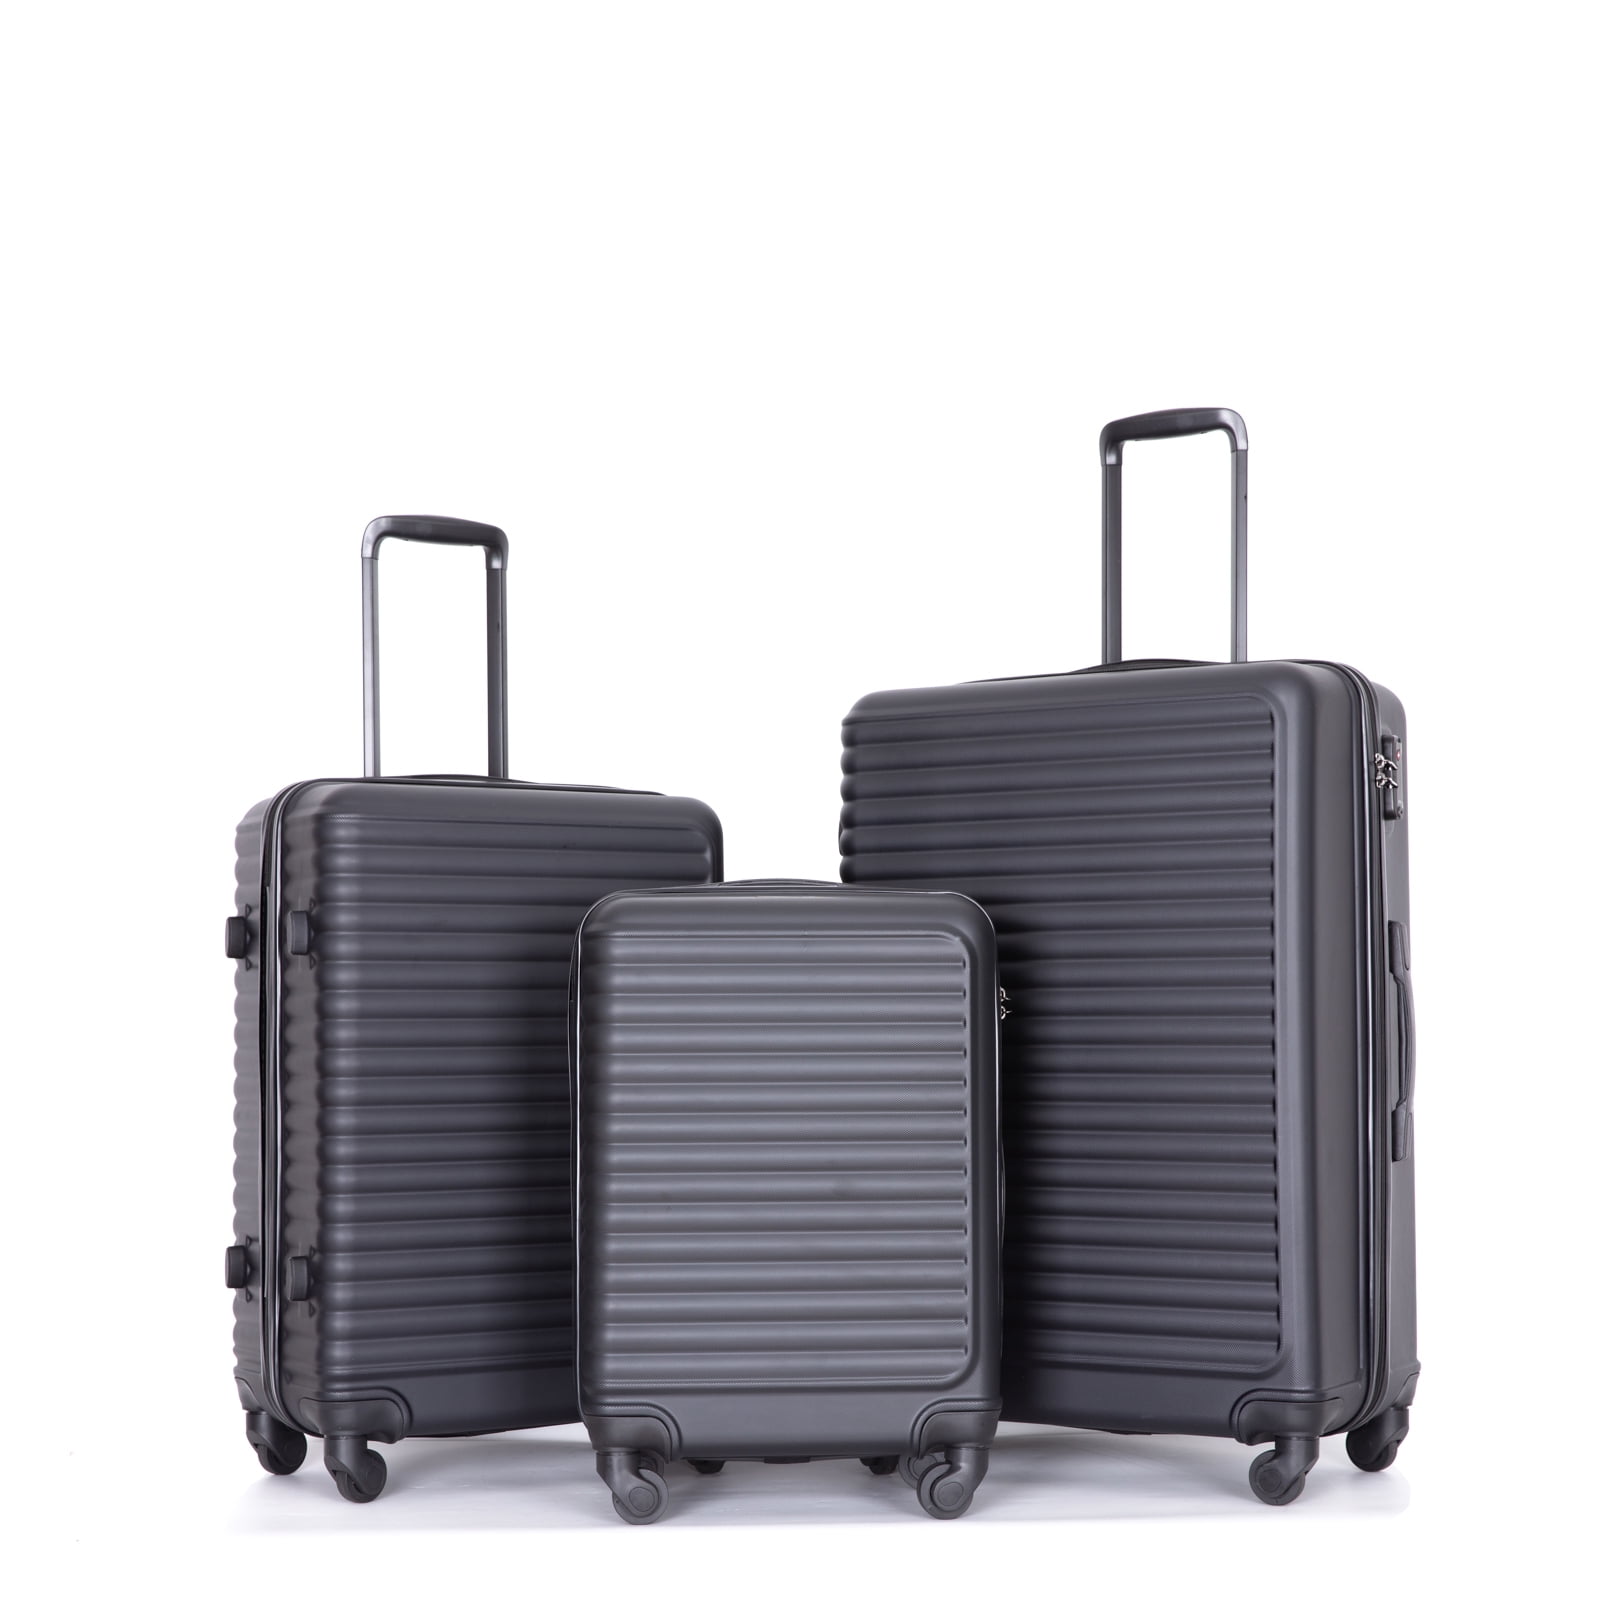 Travelhouse 3 Piece Luggage Sets, Hardshell Expandable Luggage Suitcase  with Spinner Wheels and TSA Lock for Travel, 20 24 28, Black 